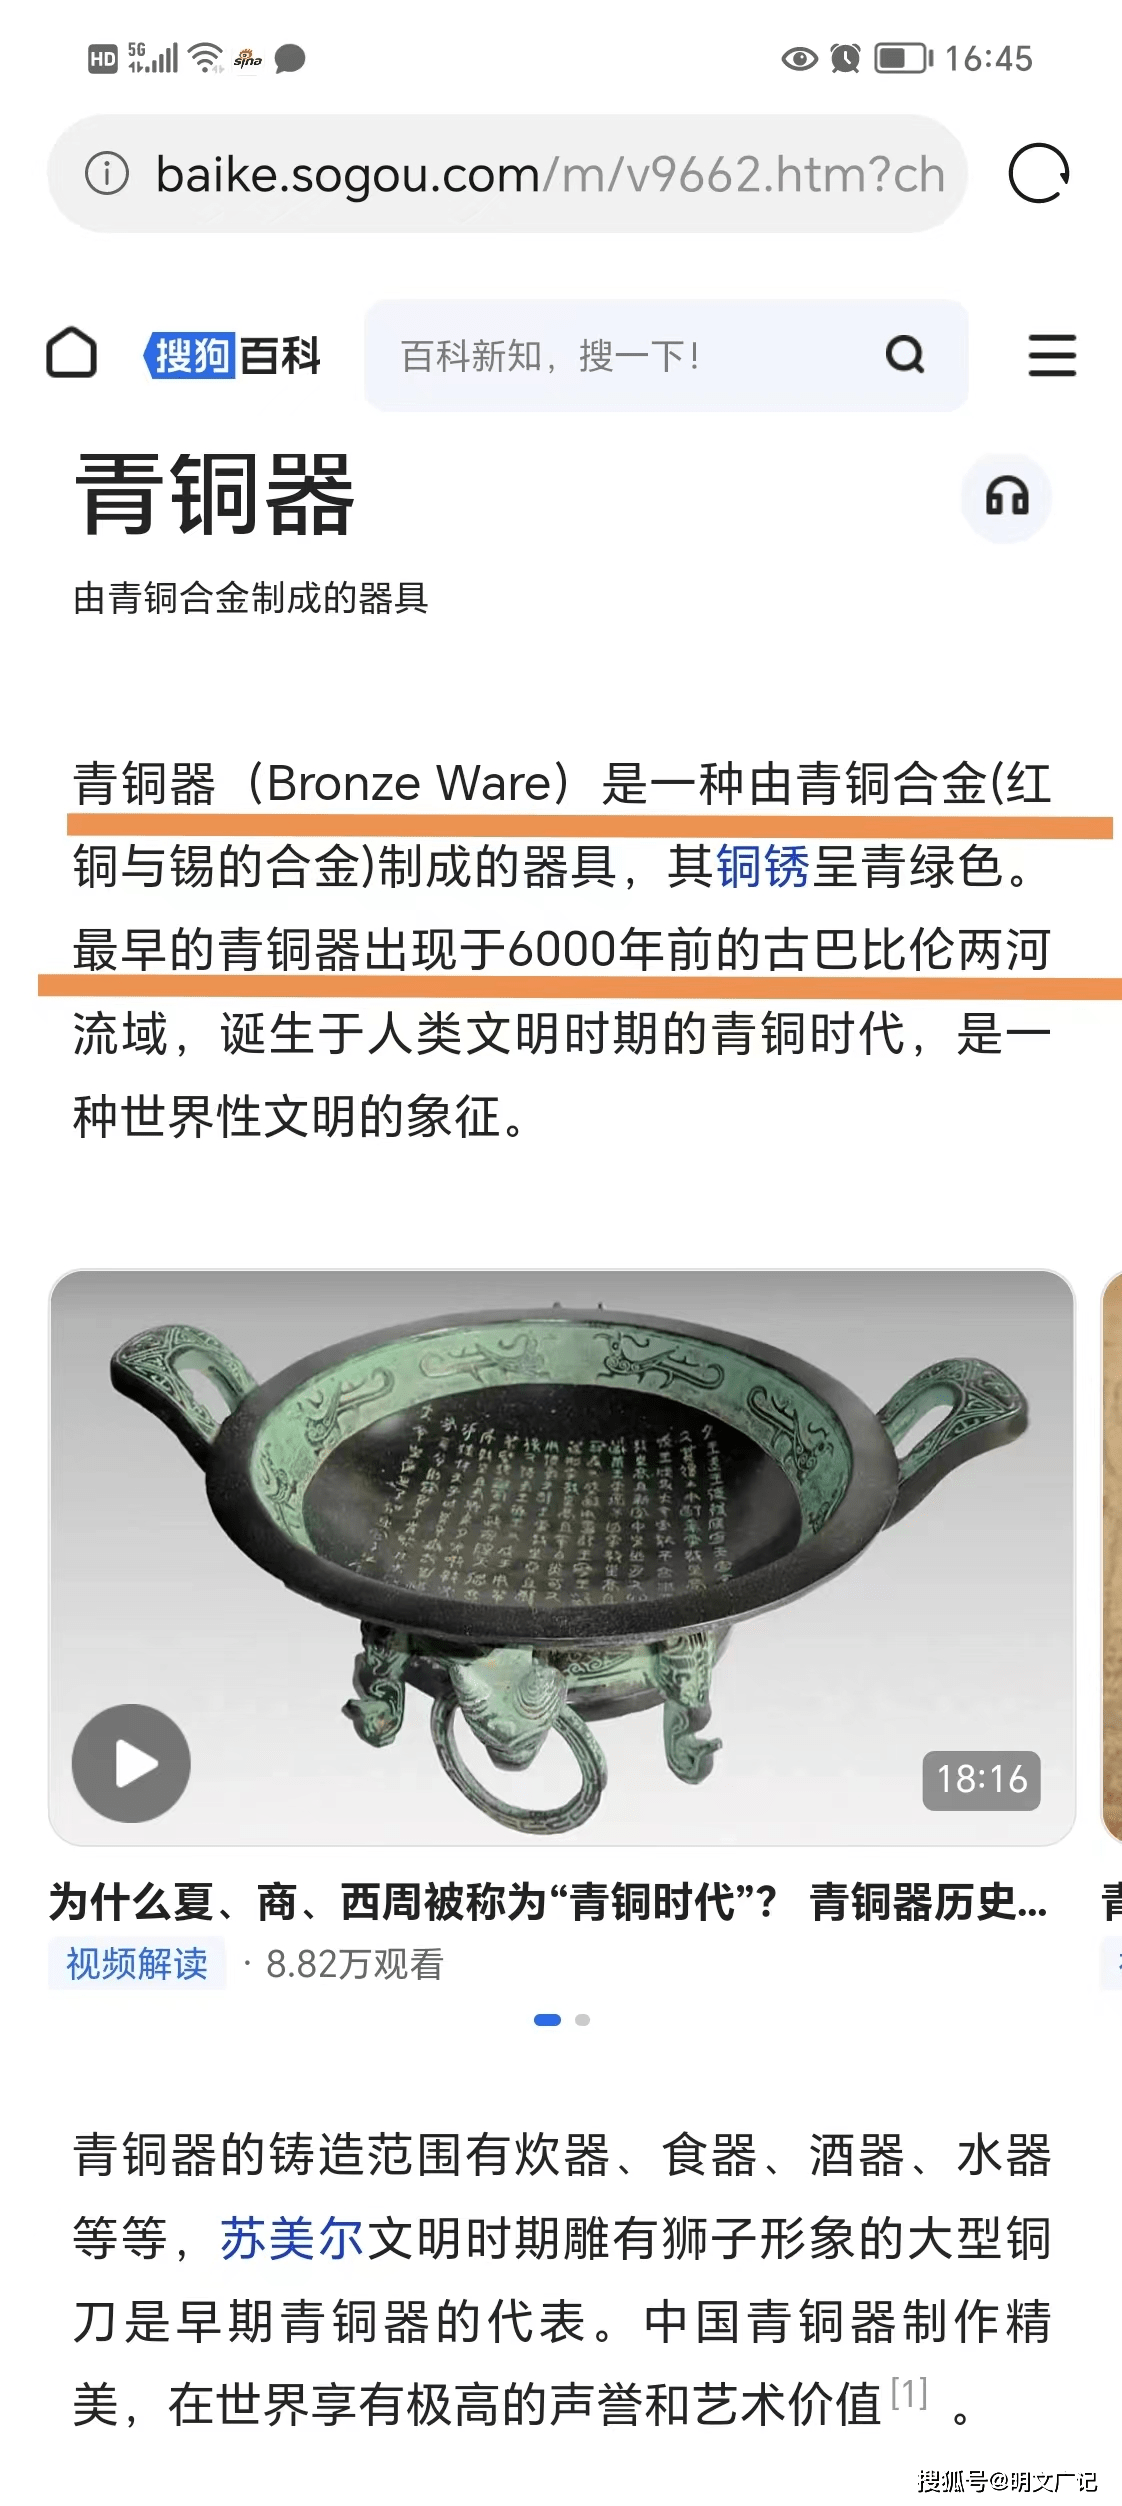 中国青铜器技术是西来的还是本土原生发明？